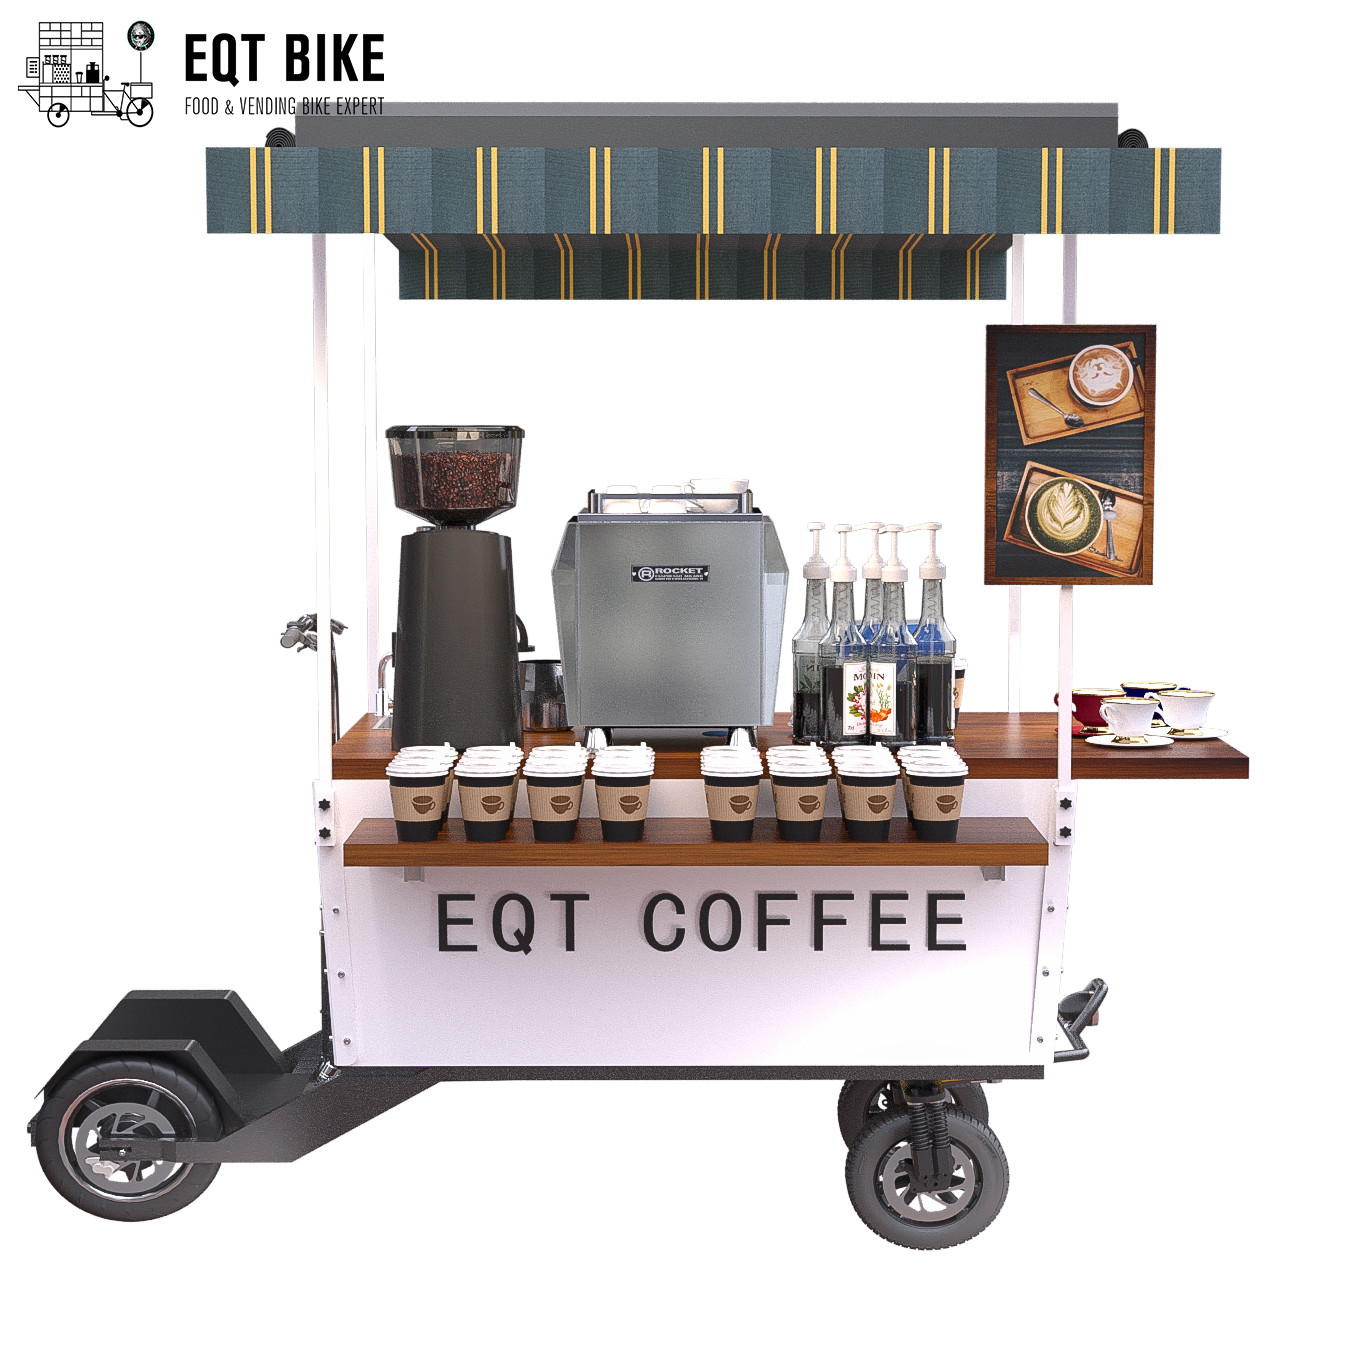 18KM/H que vende o carro da bicicleta do café da estrutura de caixa do &quot;trotinette&quot;